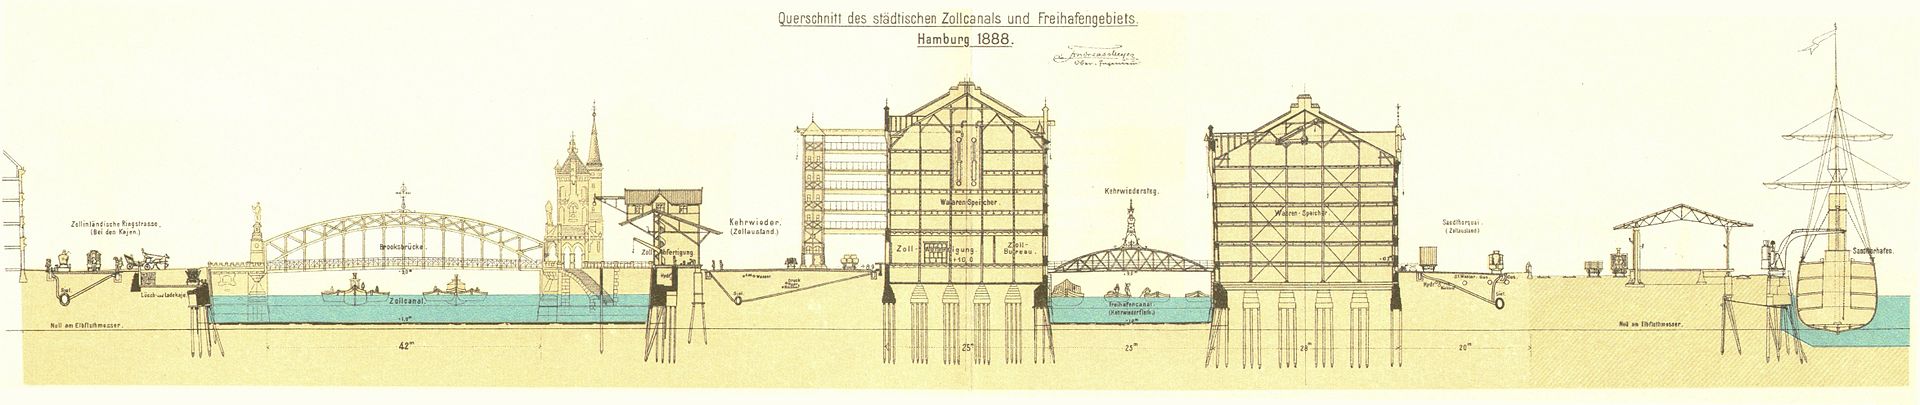 Plan coupé de la Speicherstadt à Hambourg